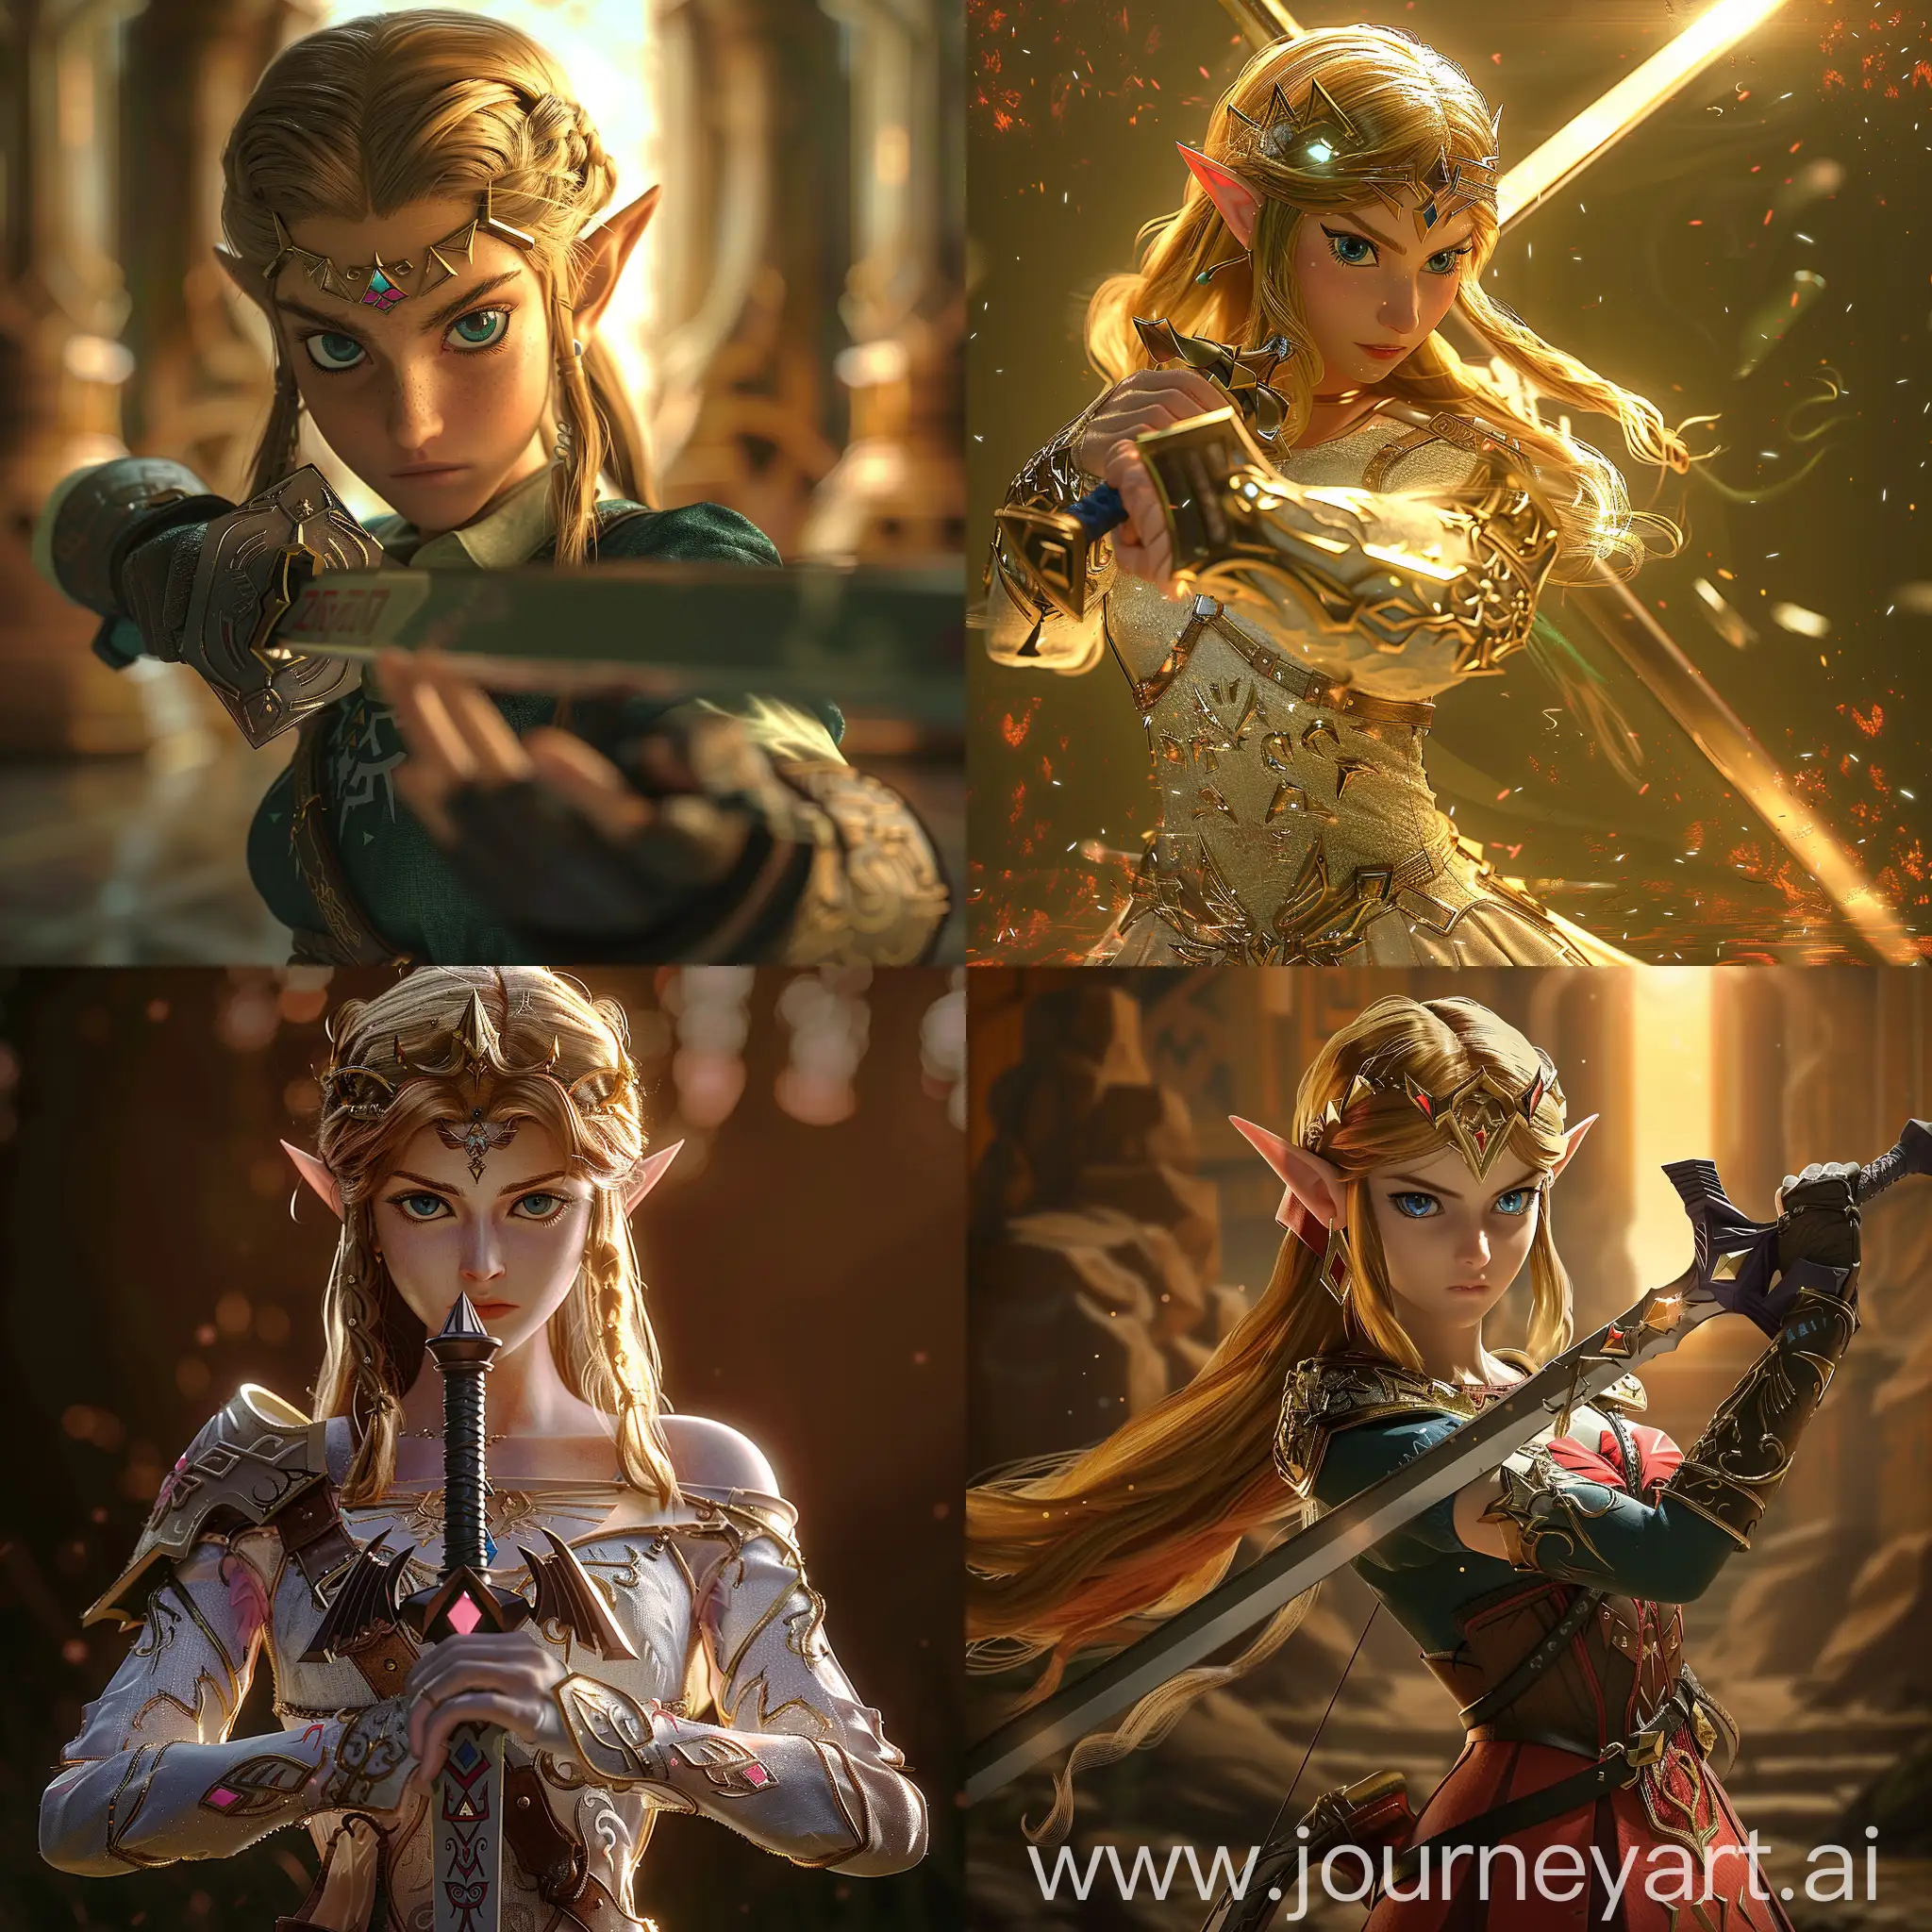 Princess-Zelda-Masterfully-Wields-Sword-in-Exquisite-CG-Scene